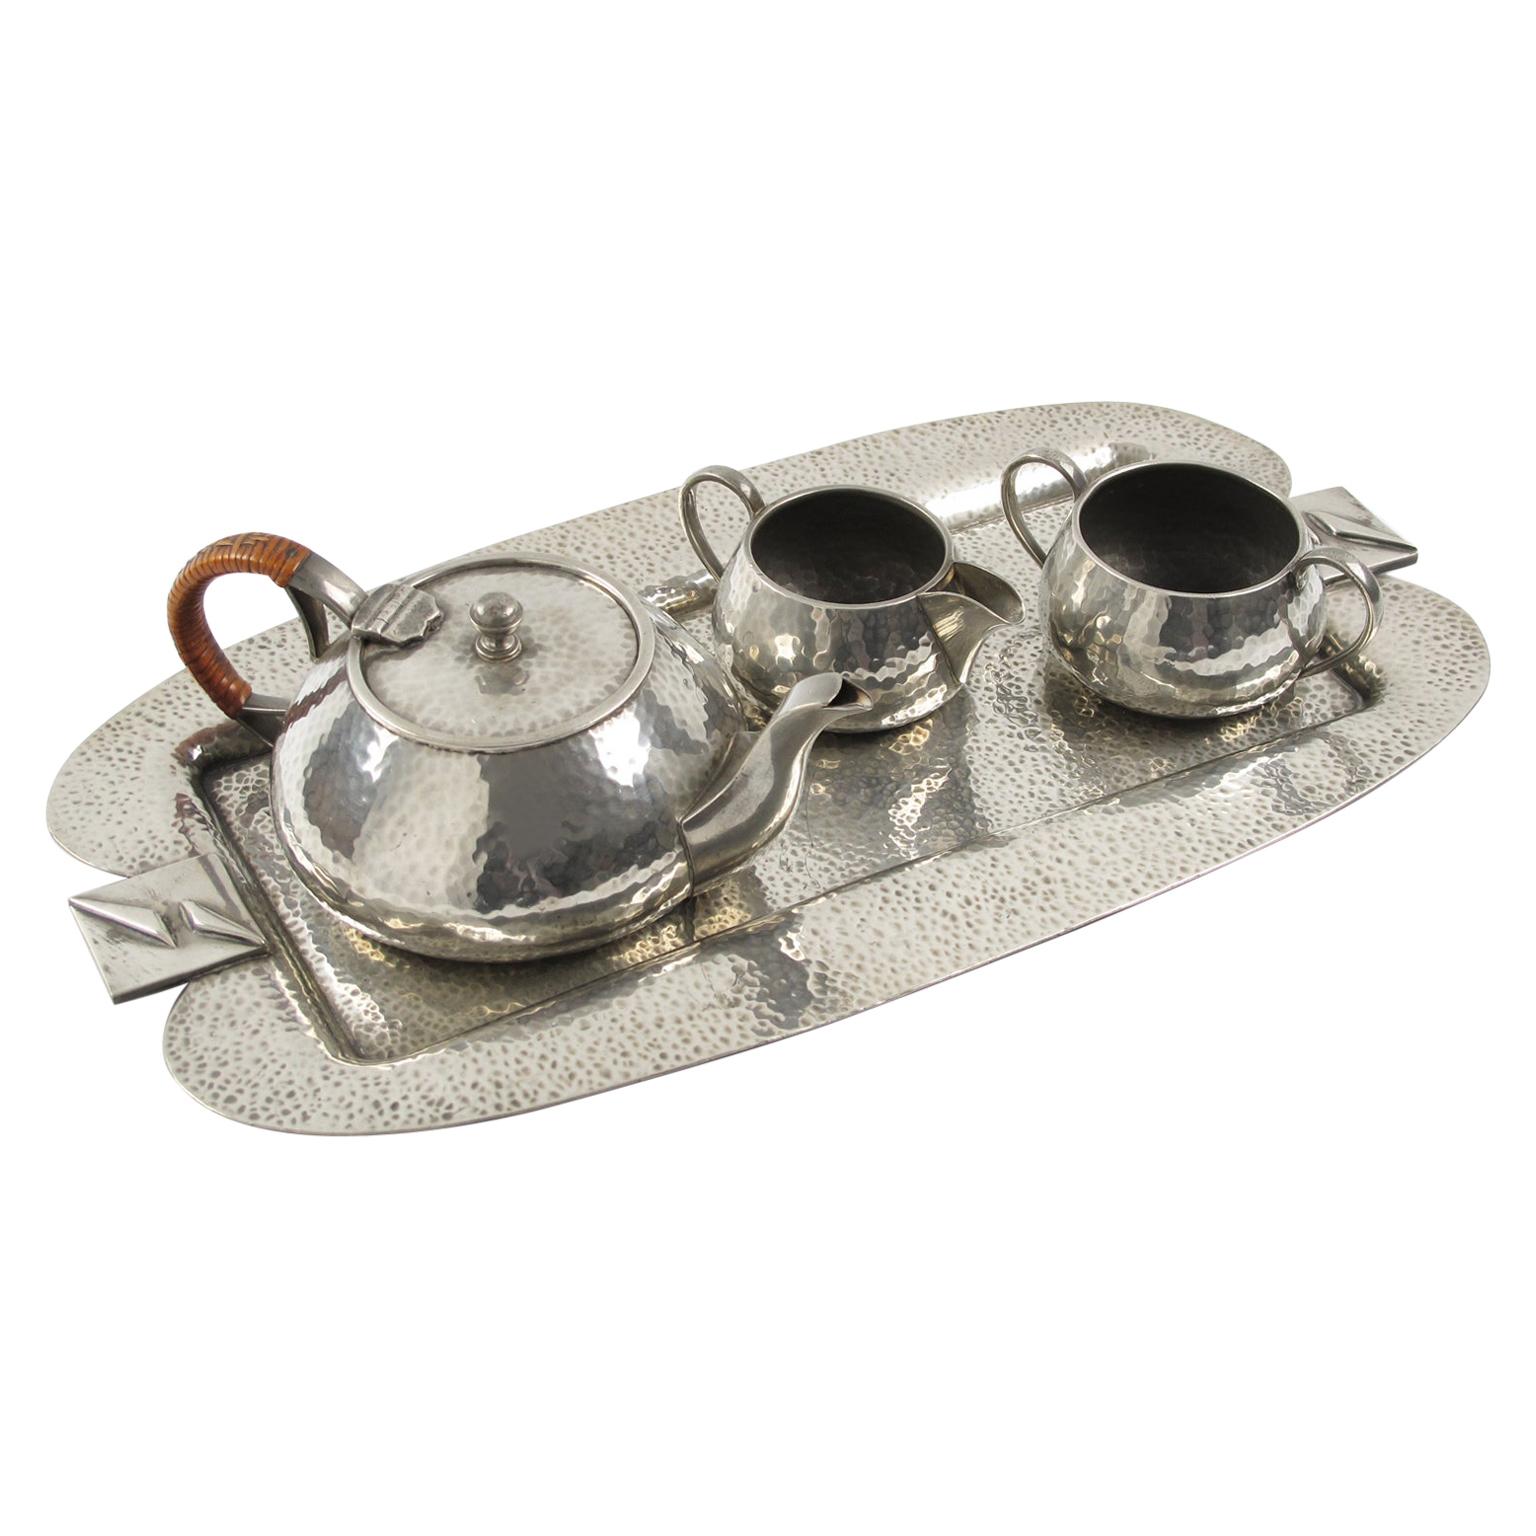 Fenton Bros Sheffield England Art Nouveau Pewter Tea Coffee Tray Set